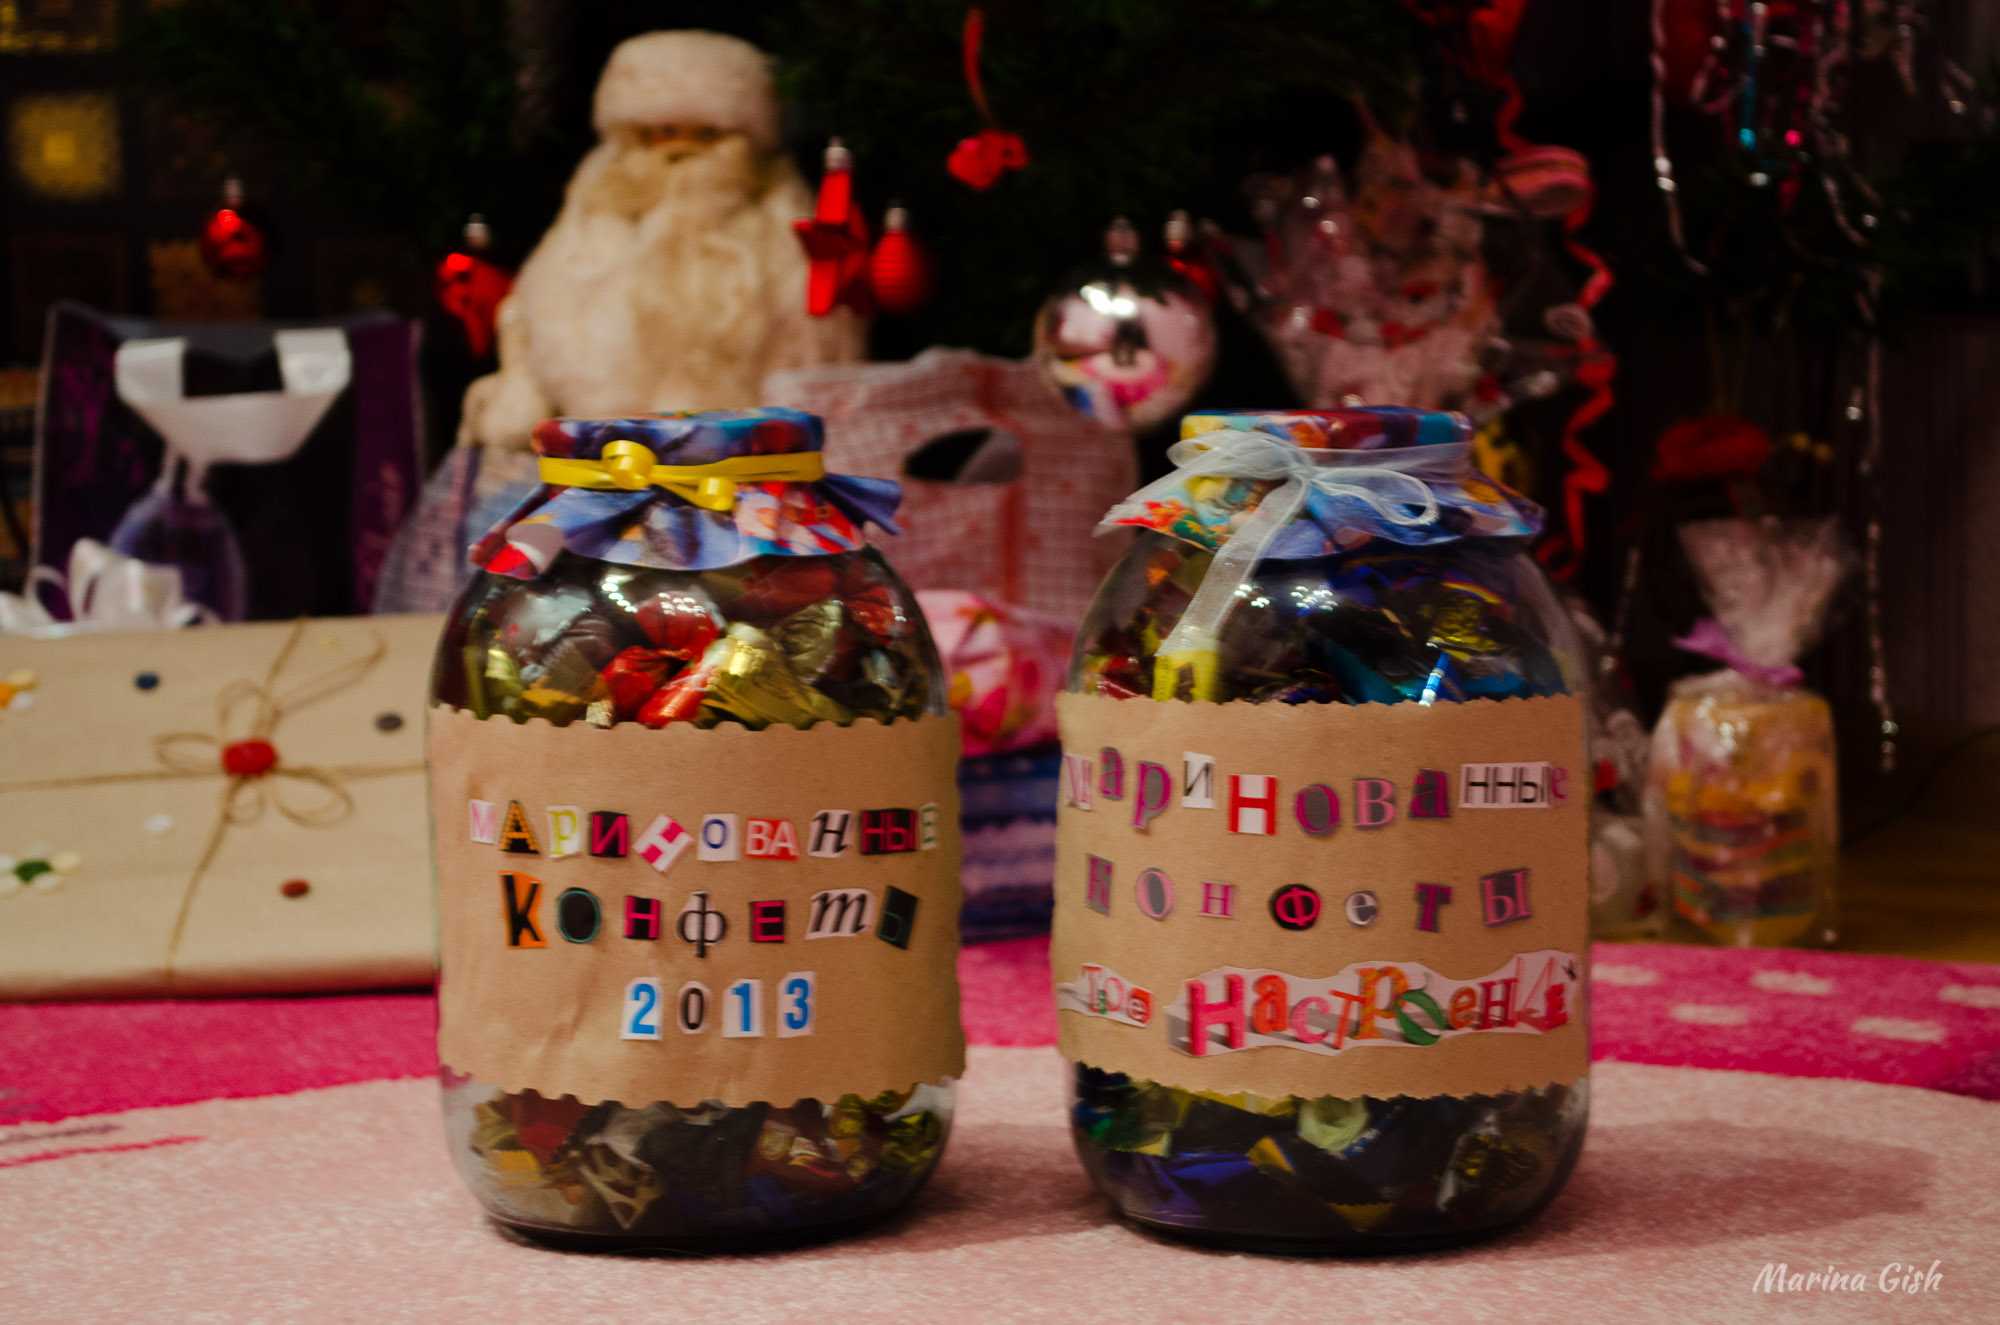 Подарки на новый год своими руками (87 фото): идеи оригинальных самодельных новогодних сувениров. какие интересные и креативные подарки можно сделать?